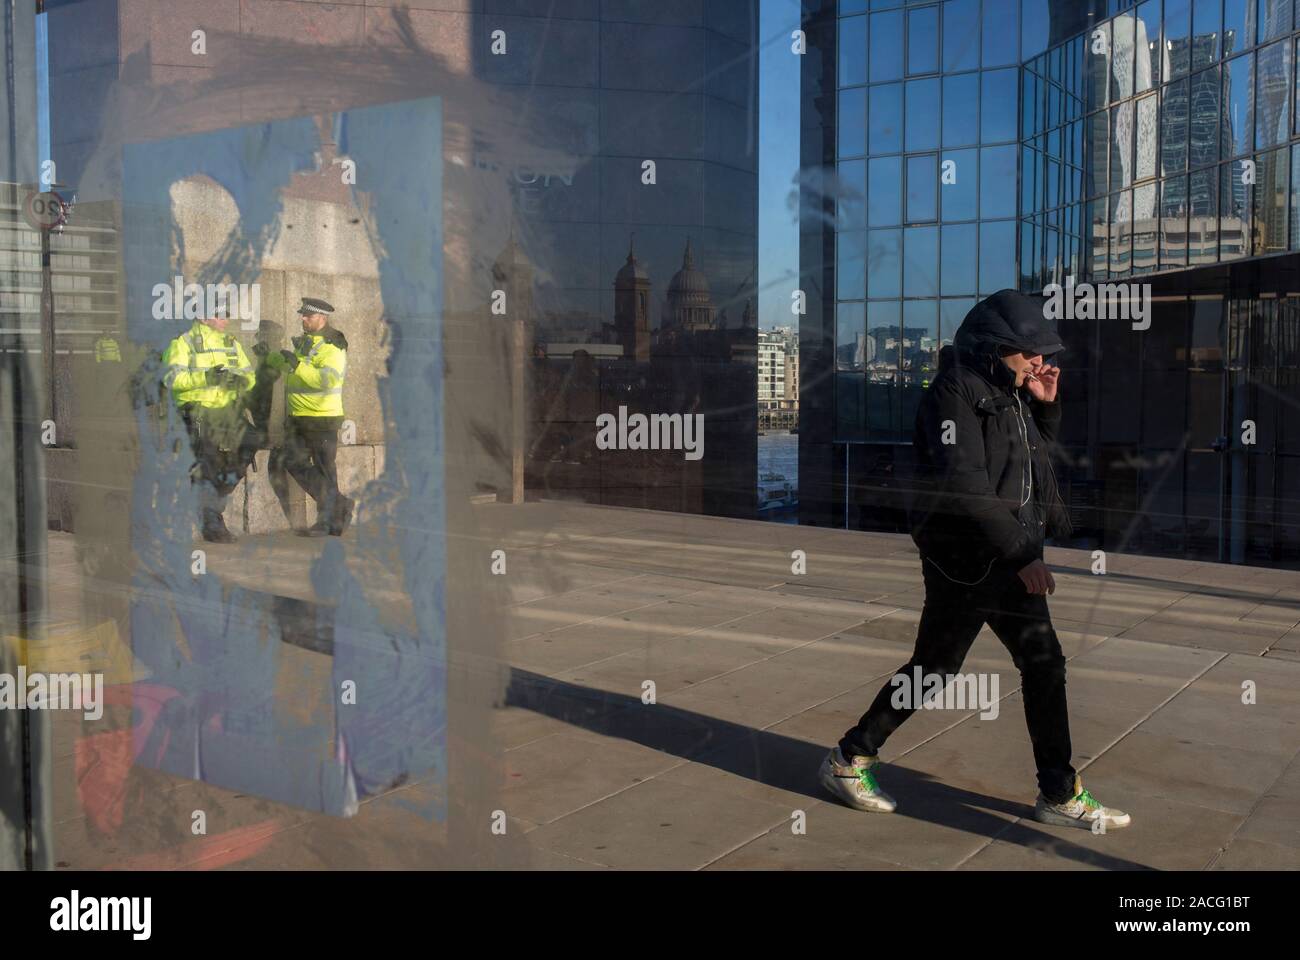 Drei Tage nach der Tötung von Jack Merritt, 25, und Saskia Jones, 23, von der überführten teorrorist Usman Khan an Fischhändler' Hall auf die London Bridge, Polizisten, eine hohe Präsenz in der Öffentlichkeit sicher fühlen, am 2. Dezember 2019 in London, England. Stockfoto